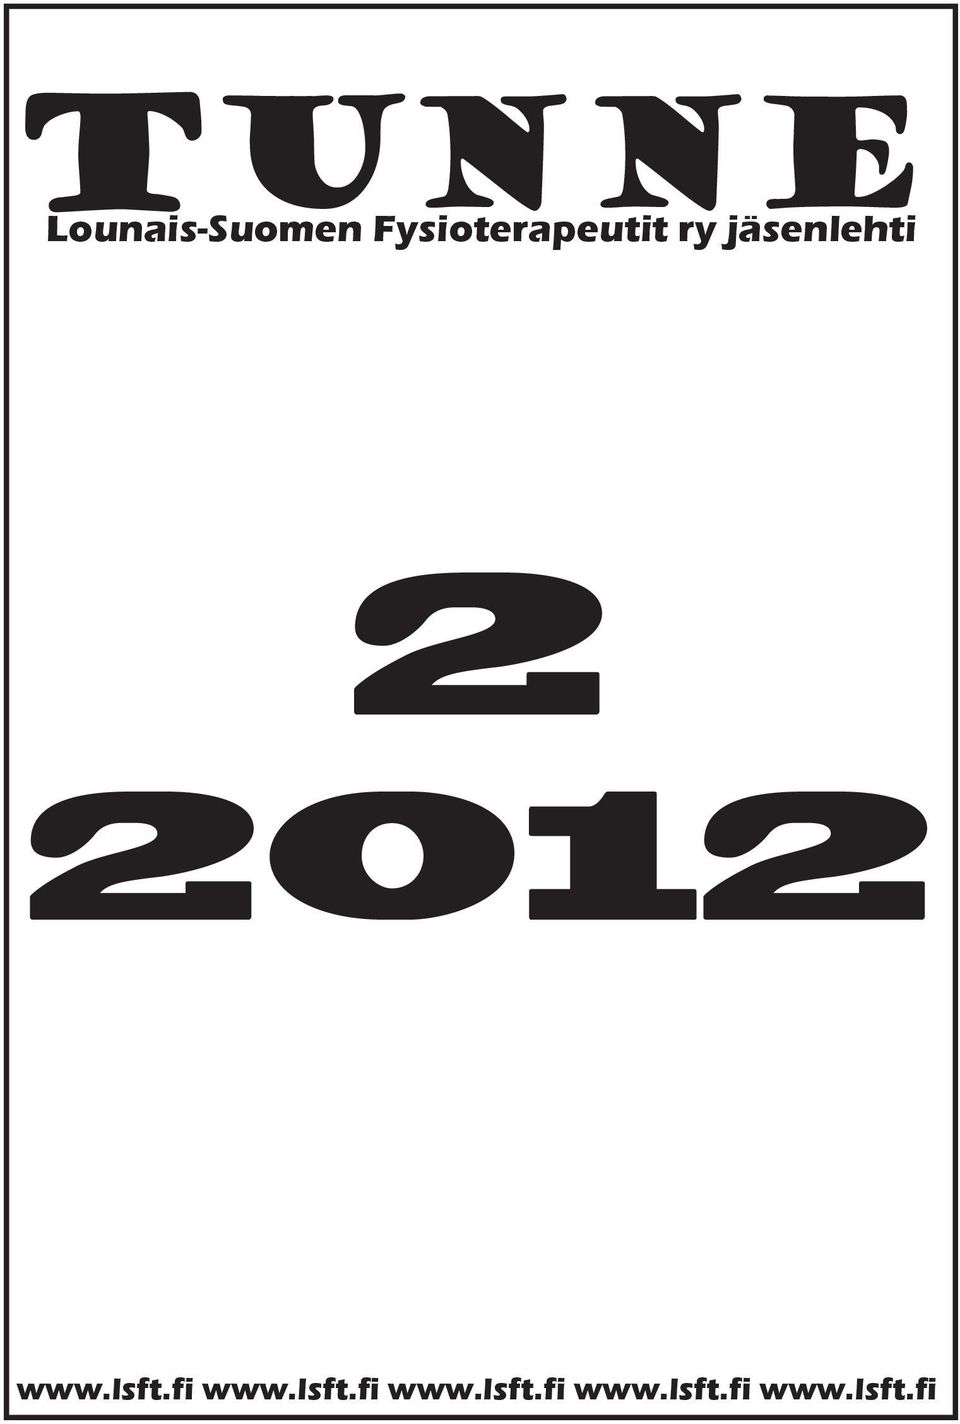 2 2012 www.lsft.fi 